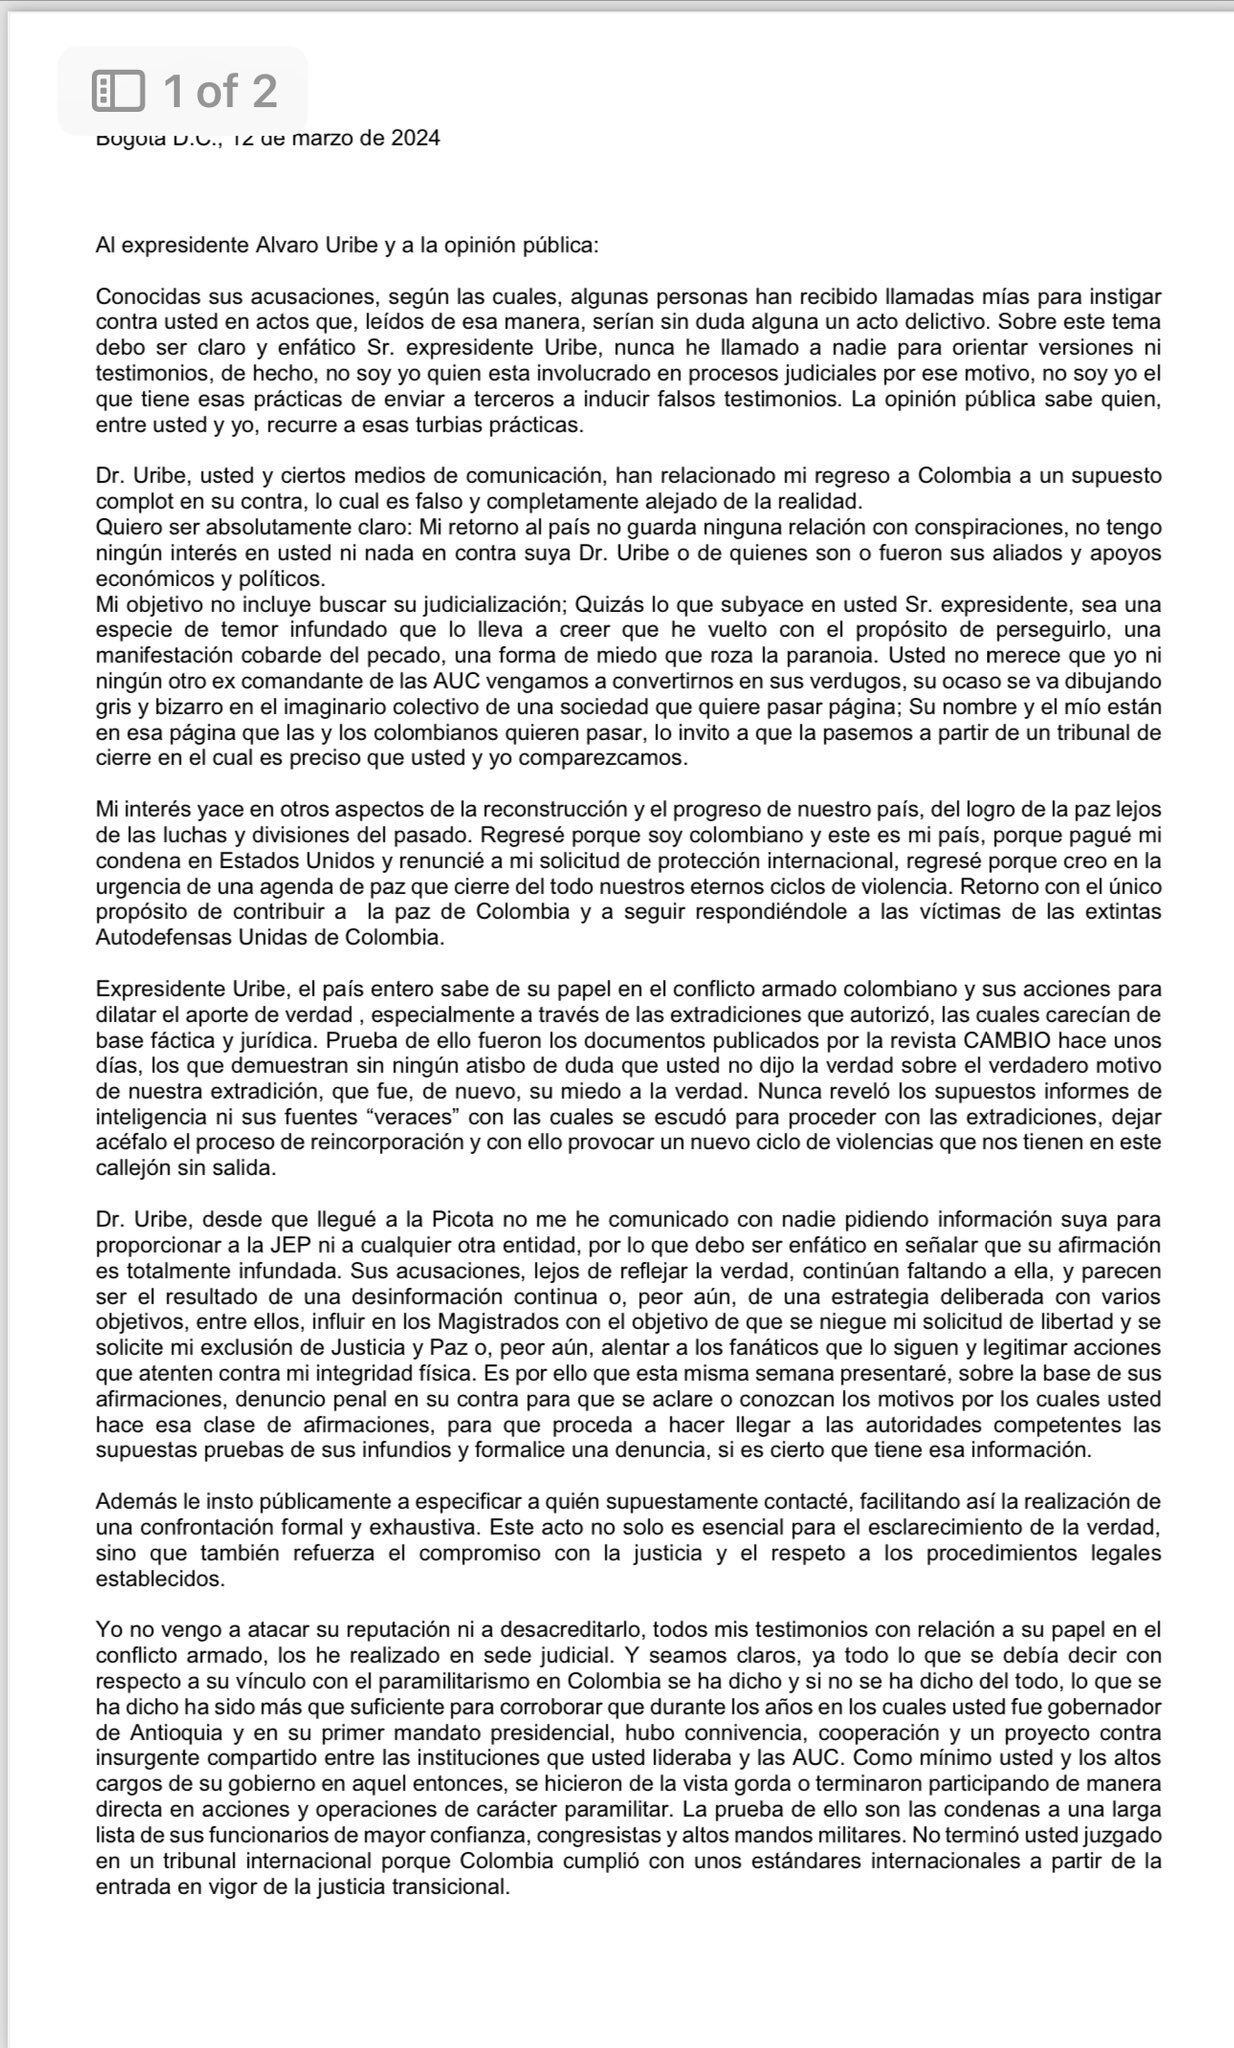 El exjefe paramilitar Salvatore Mancuso le envió una carta a Álvaro Uribe señalándolo de buscar un linchamiento en su contra